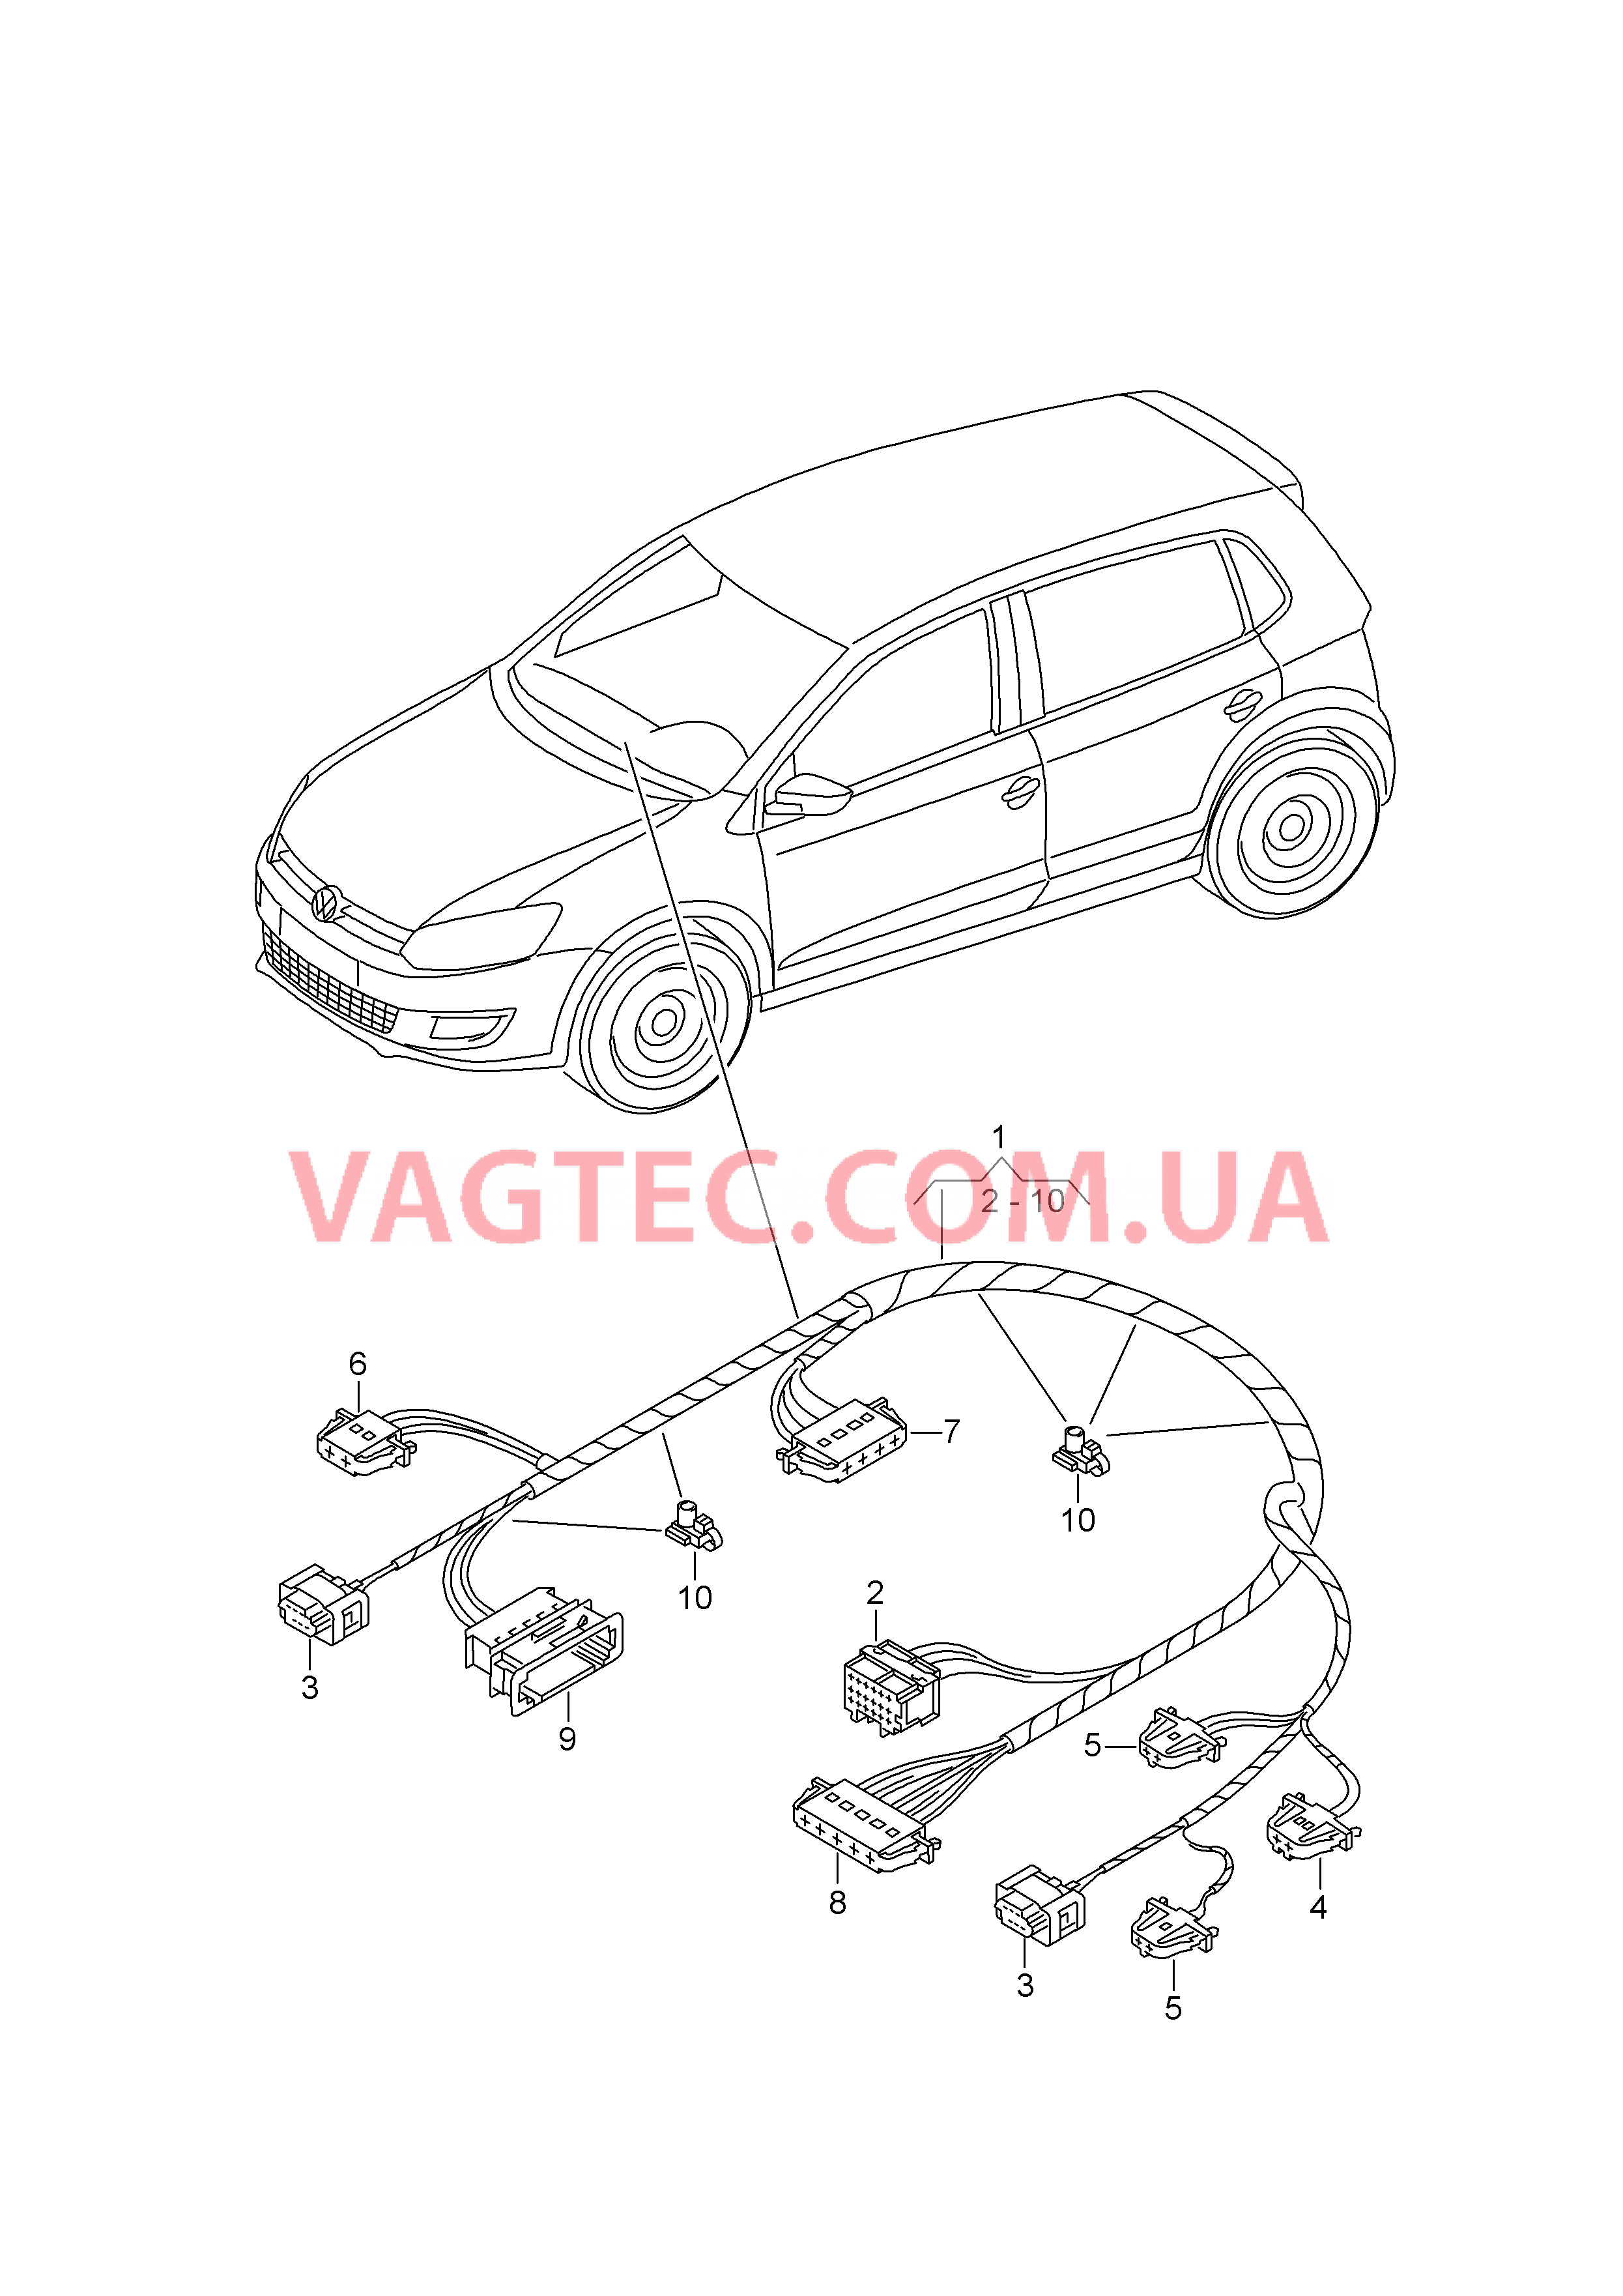 Жгут проводов устройства регулировки отопления  Жгут проводов устройства регулировки отопления  для автомобилей с кондицион.  для SEAT Ibiza 2016